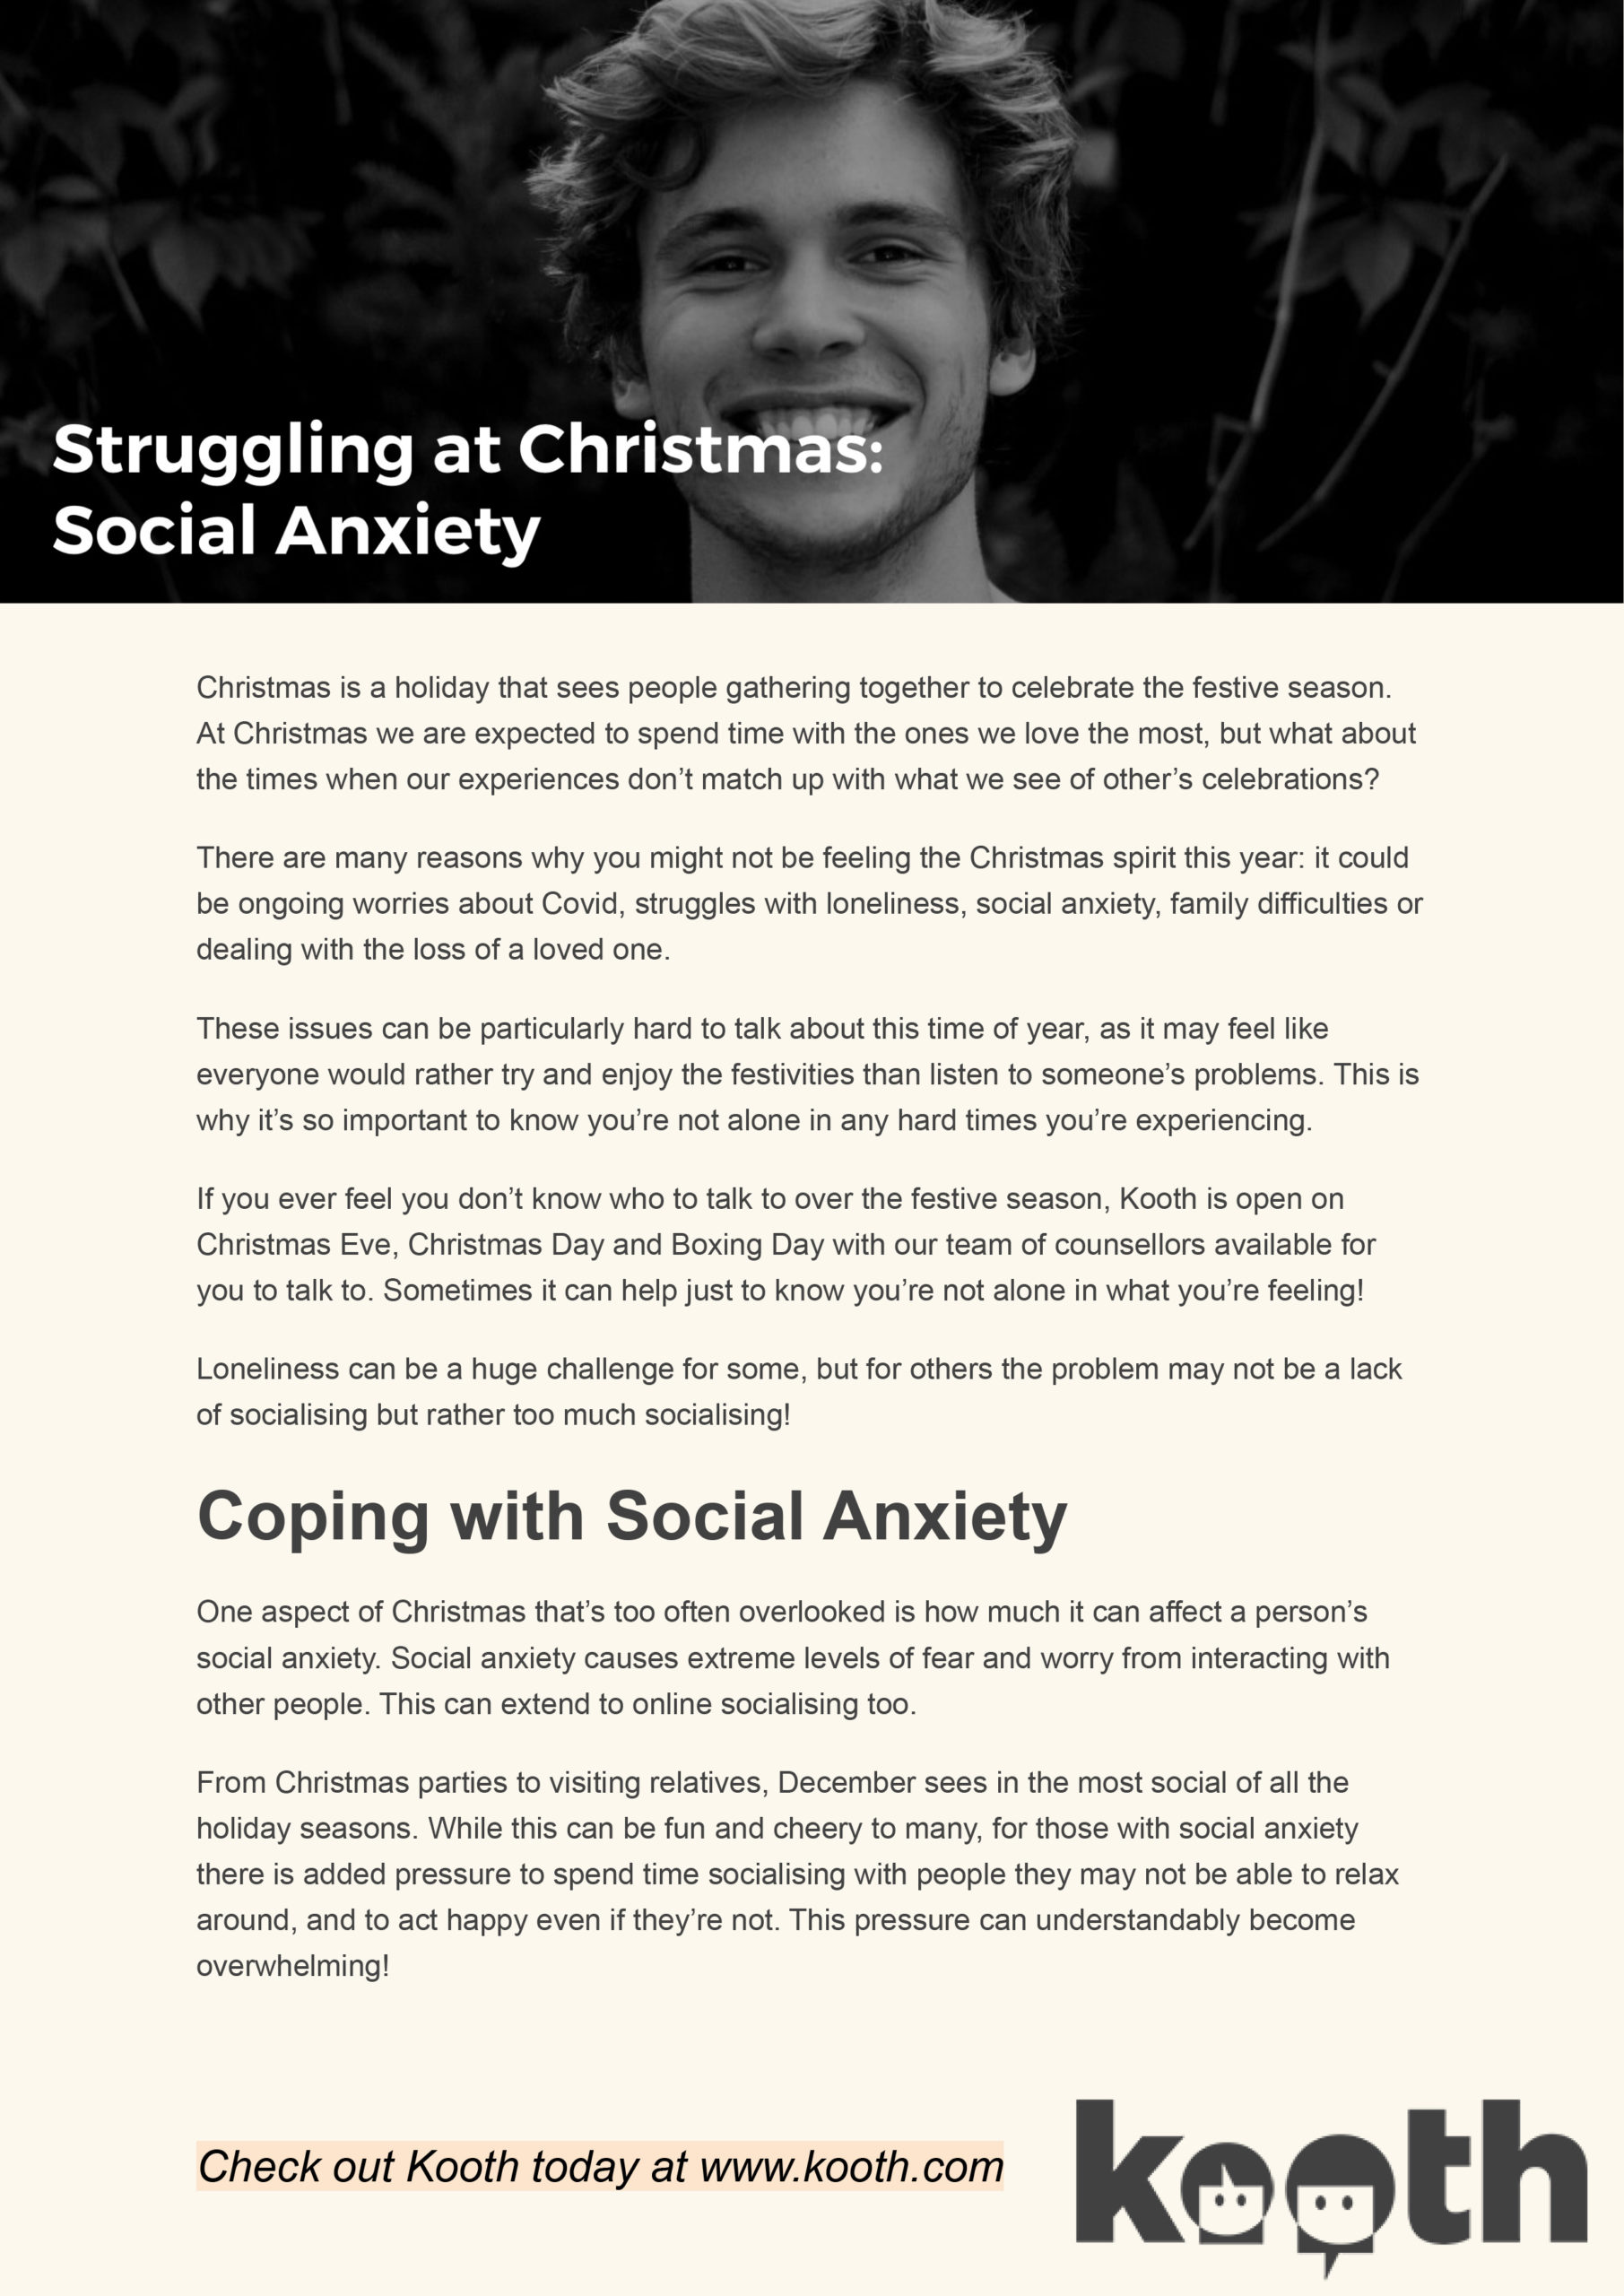 Struggling at Christmas - Social Anxiety